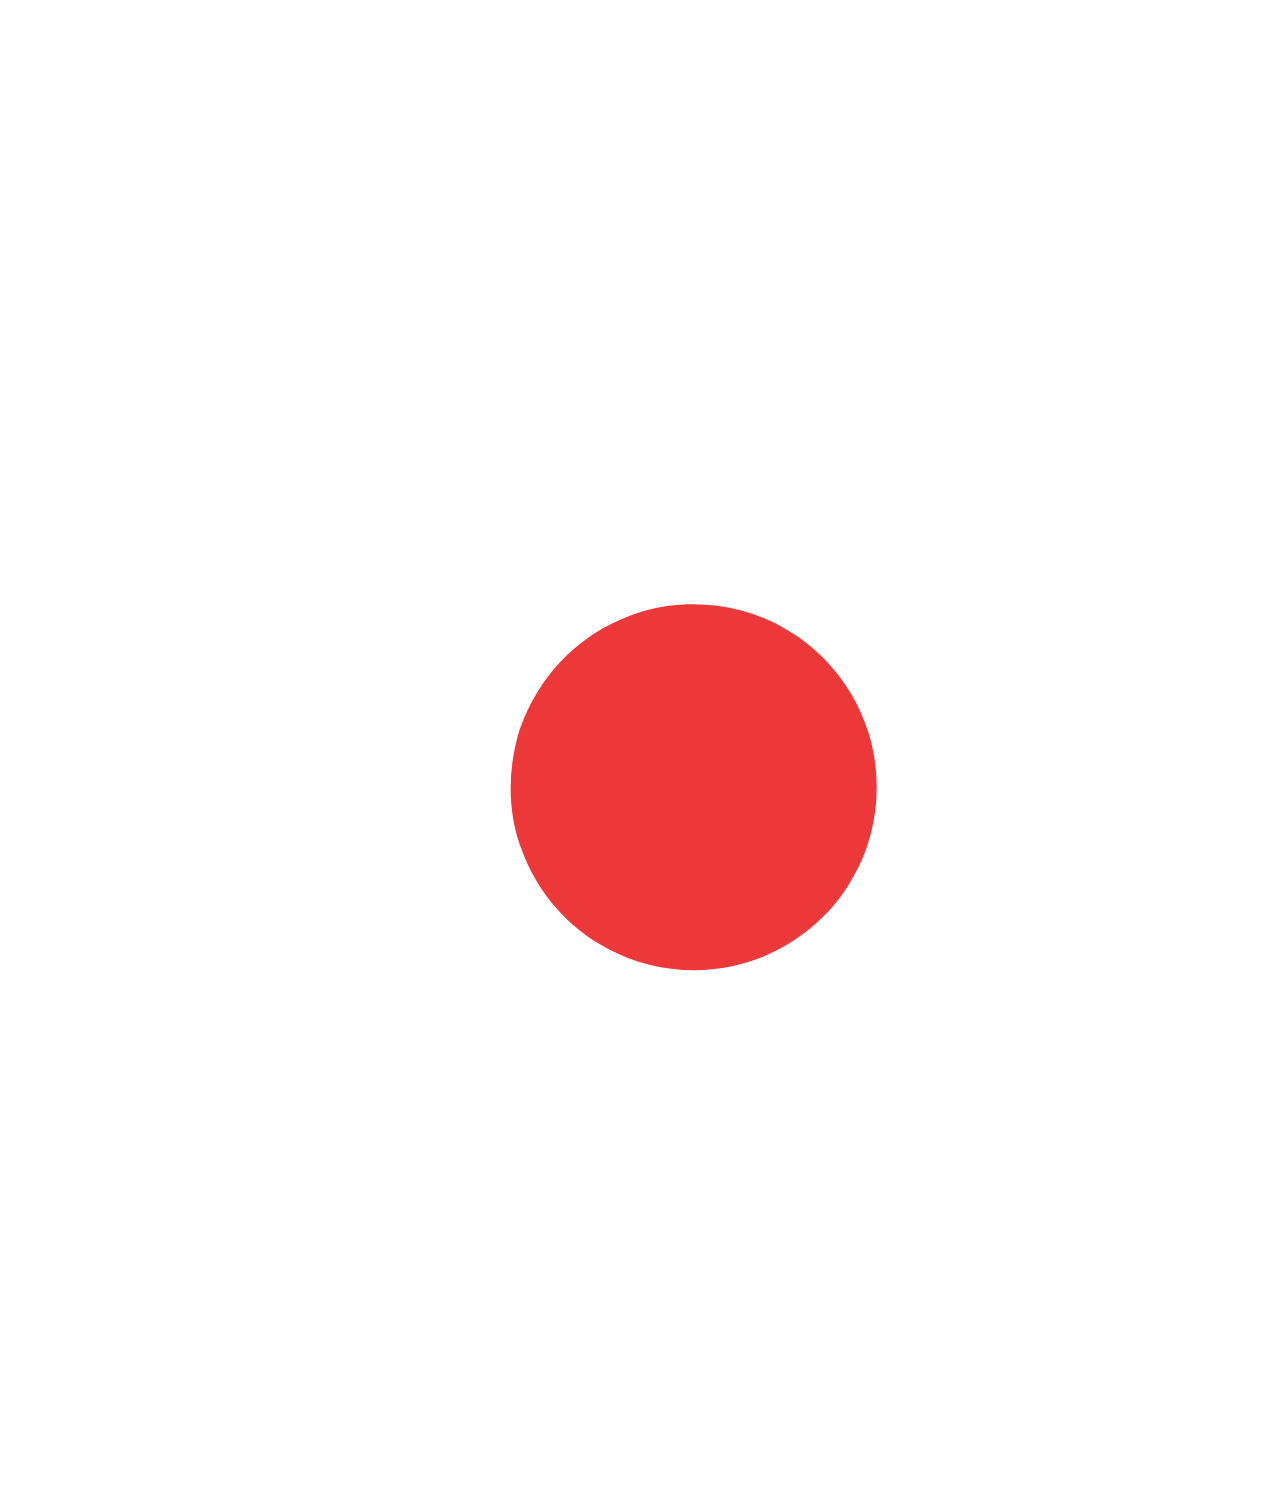 Aspen Pharmacare logo pour fonds sombres (PNG transparent)